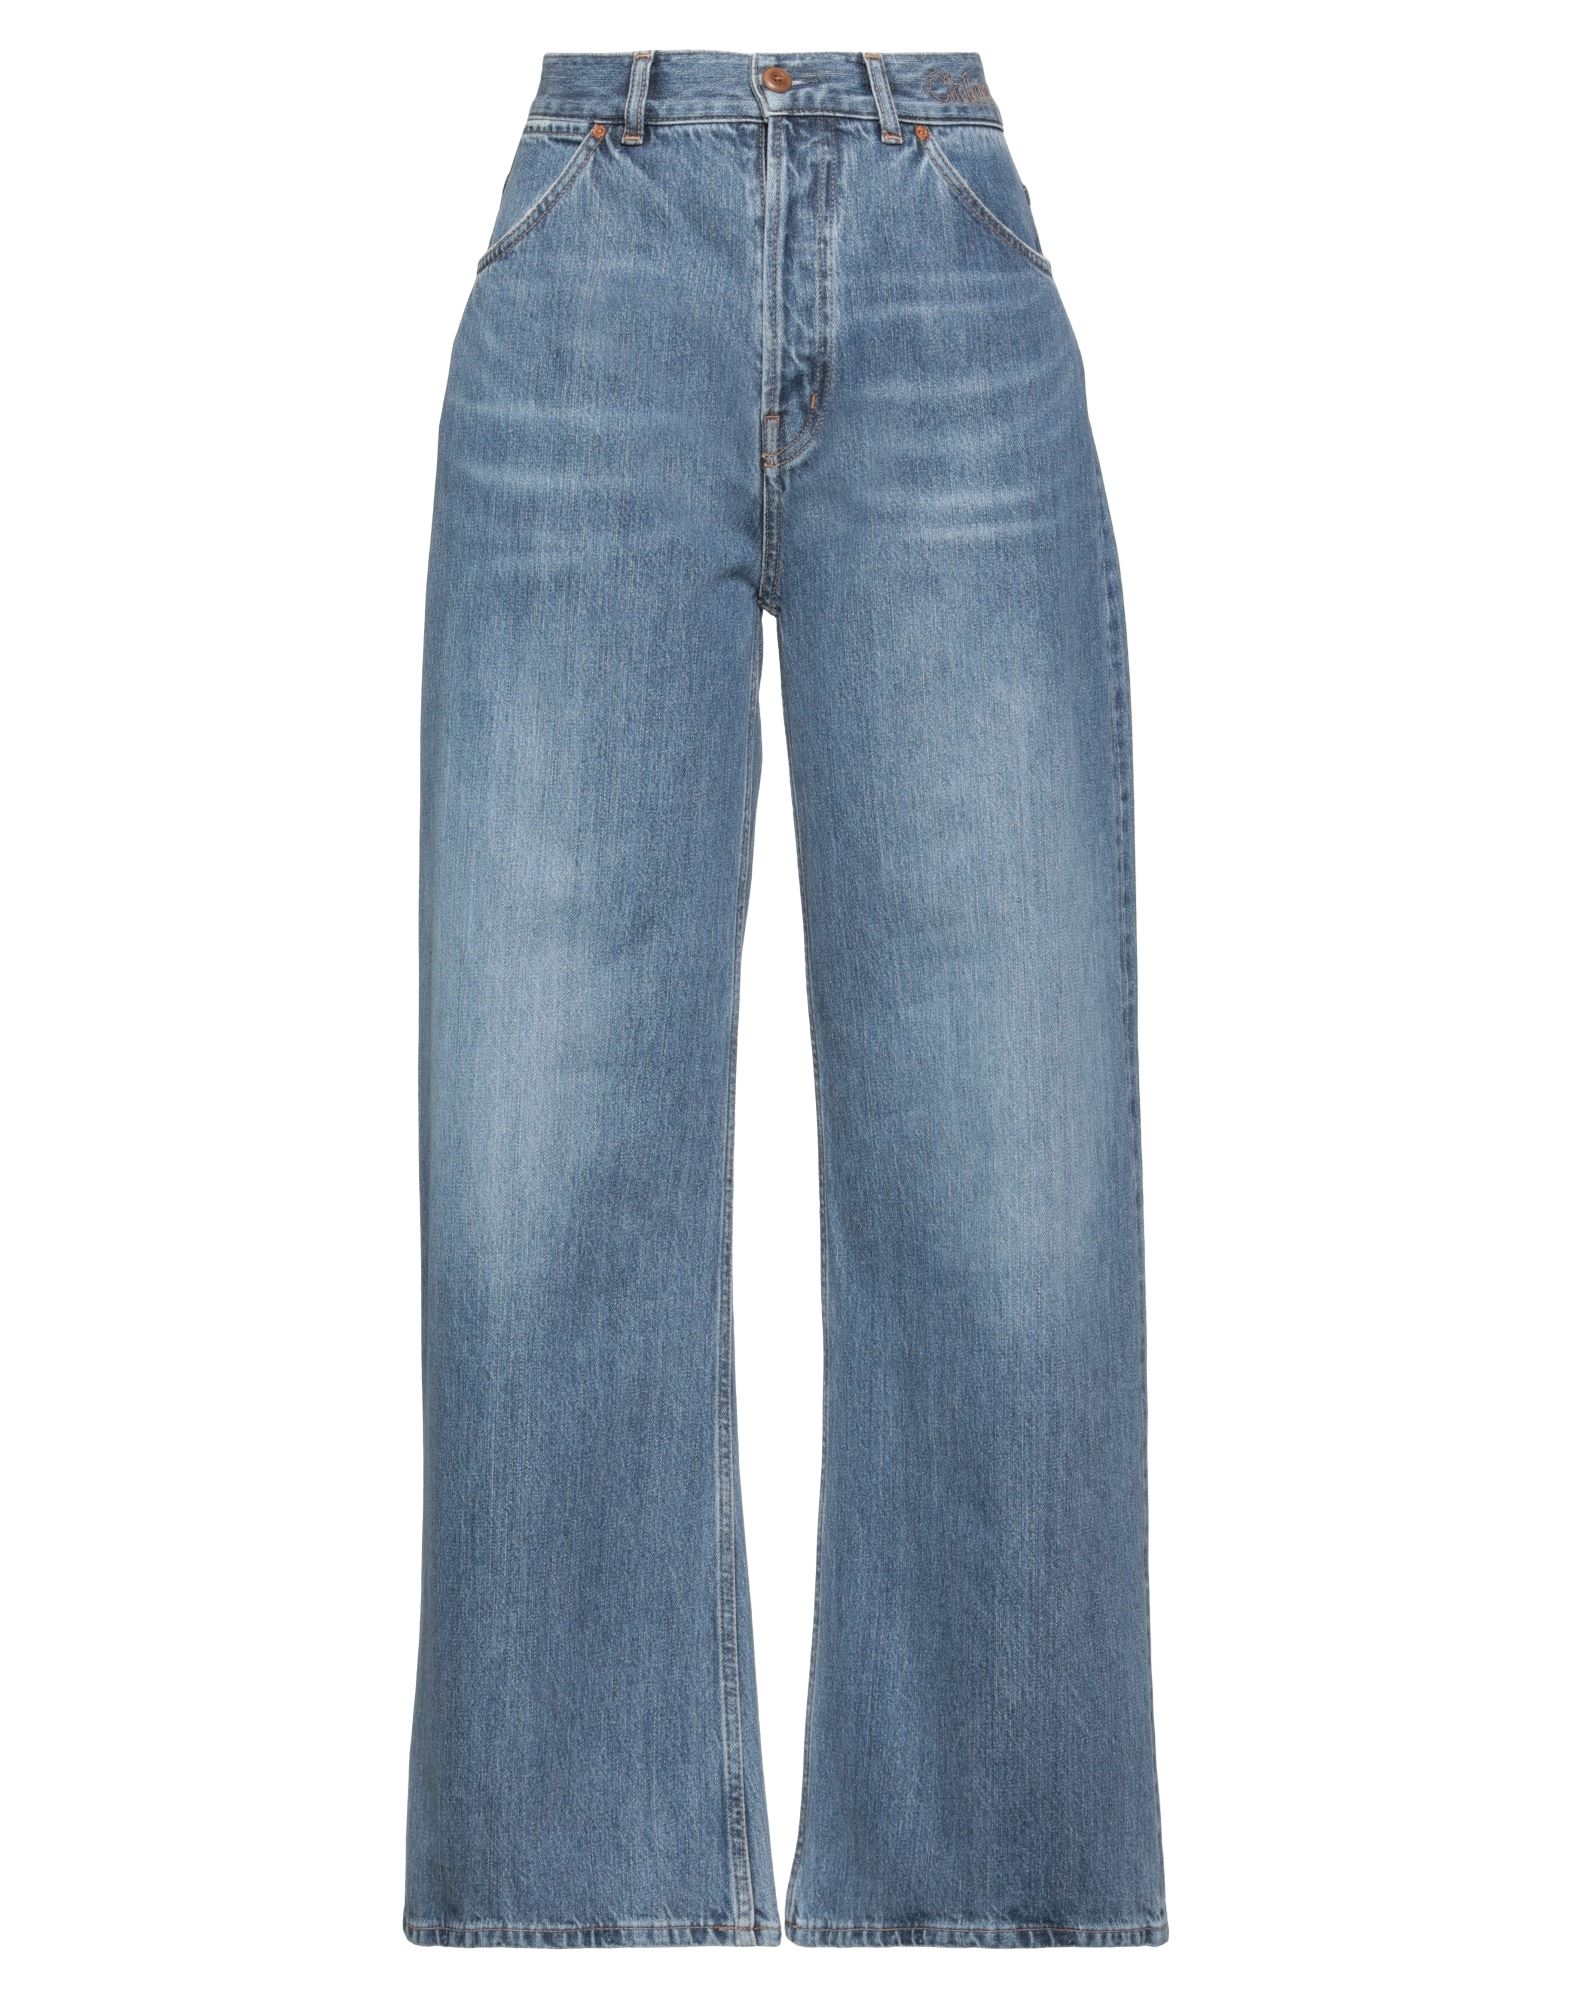 Shop Chloé Woman Jeans Blue Size 29w-29l Cotton